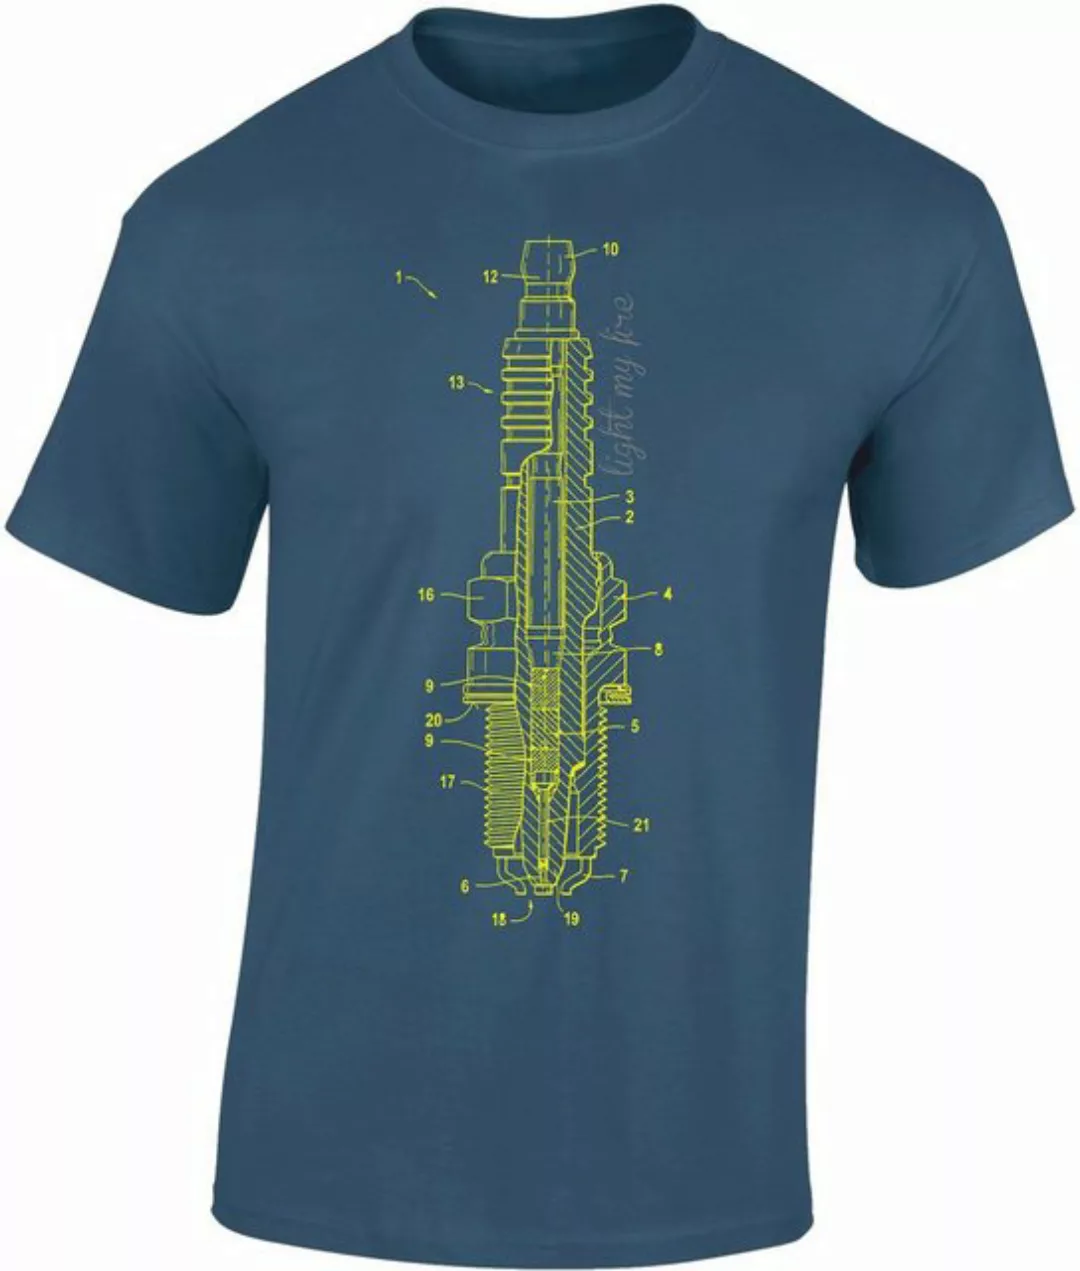 Baddery Print-Shirt Auto T-Shirt: "Zündkerze - Light my fire" - Motorsport günstig online kaufen